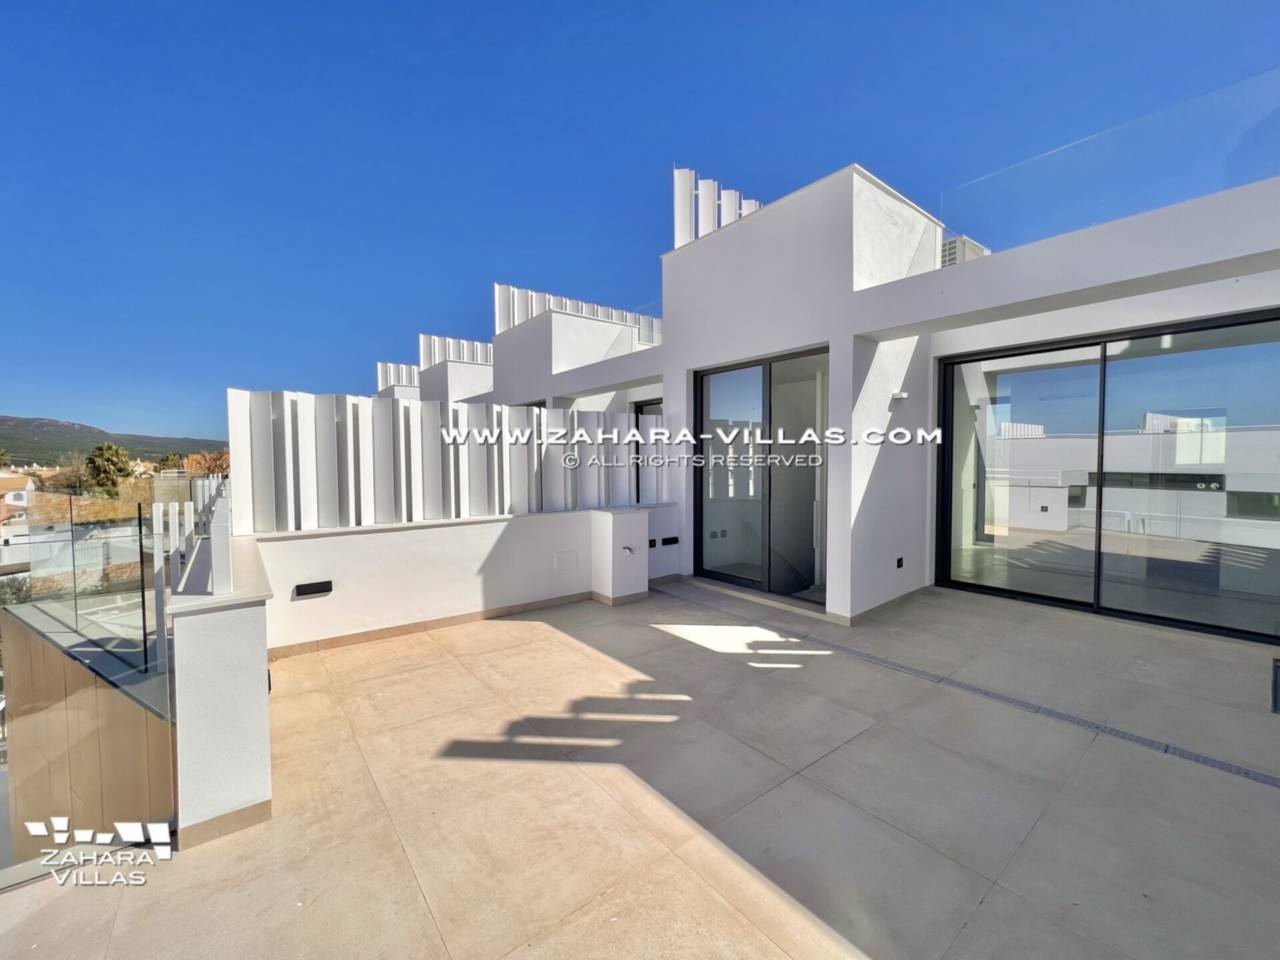 Imagen 45 de Promoción obra nueva terminada "EL OASIS DE ZAHARA" viviendas adosadas junto al mar